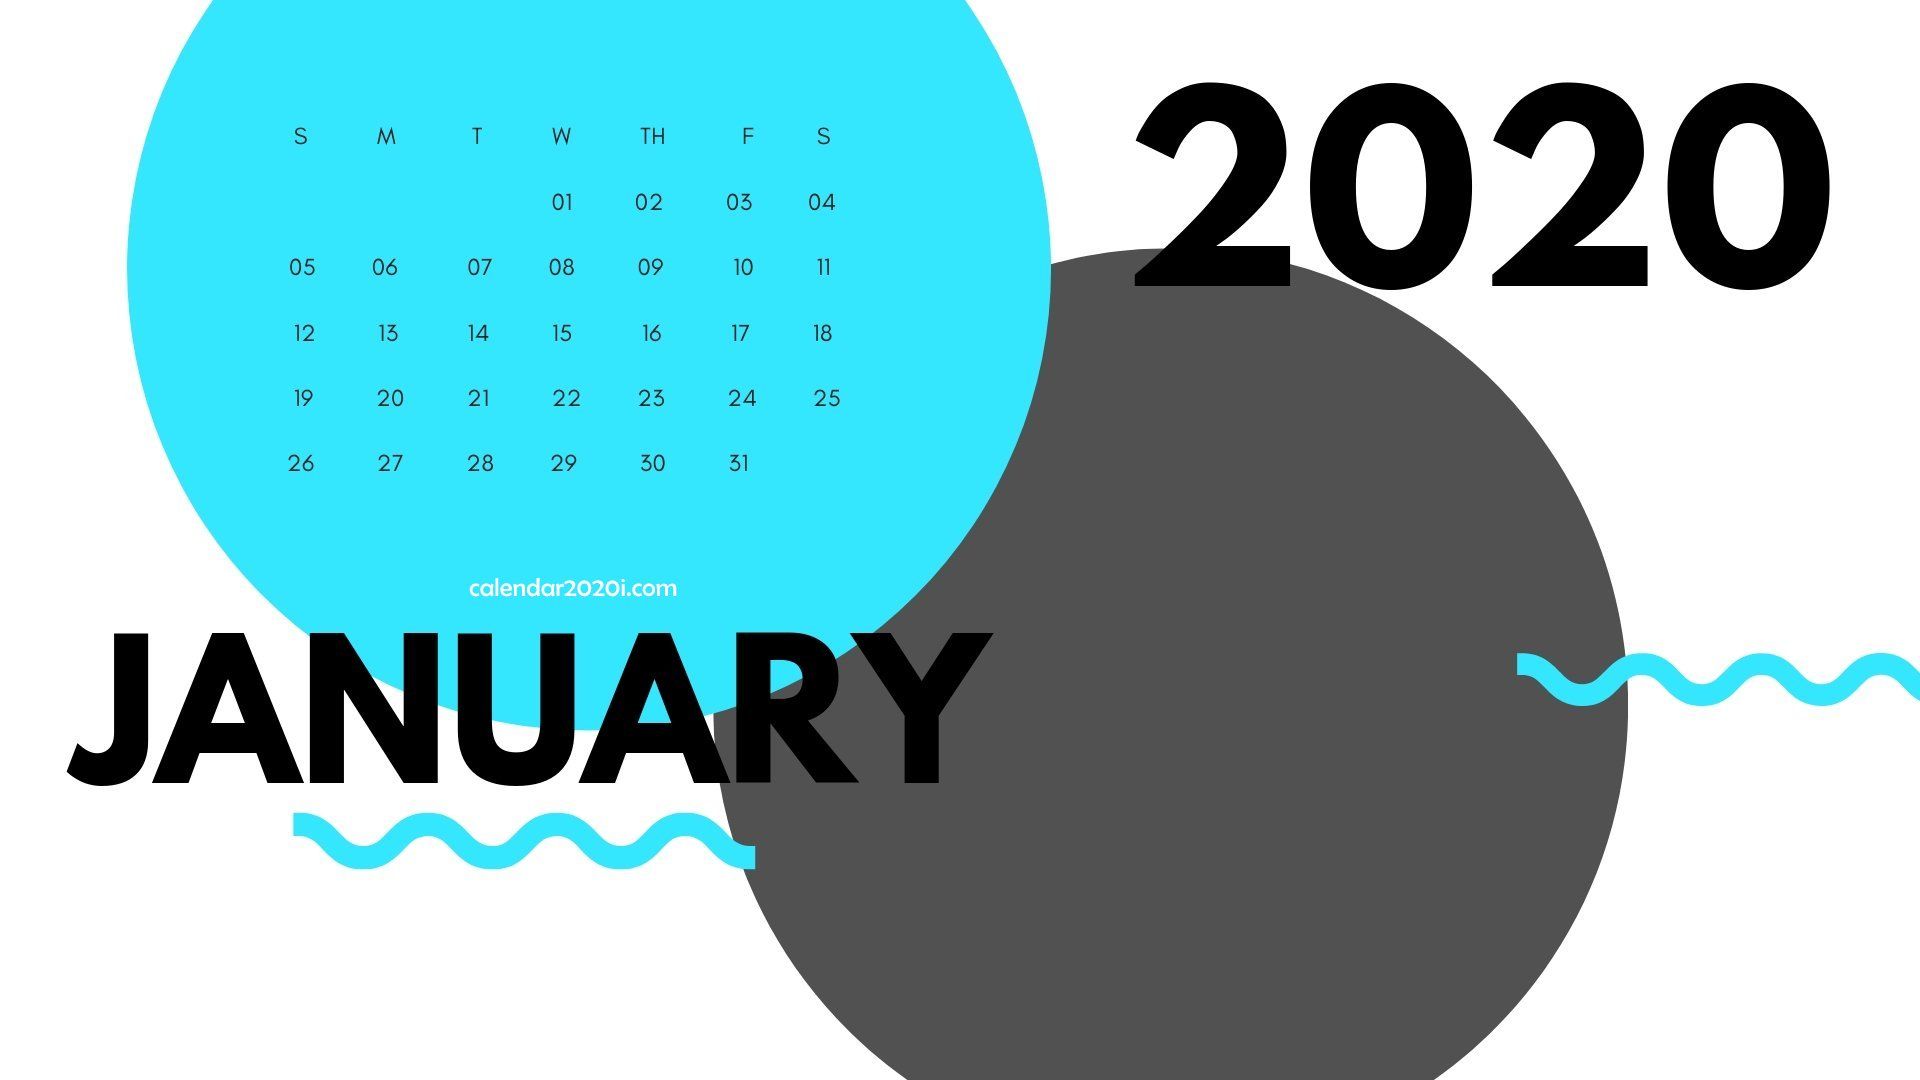 January 2020 Calendar Wallpapers   Top January 2020 Calendar 1920x1080